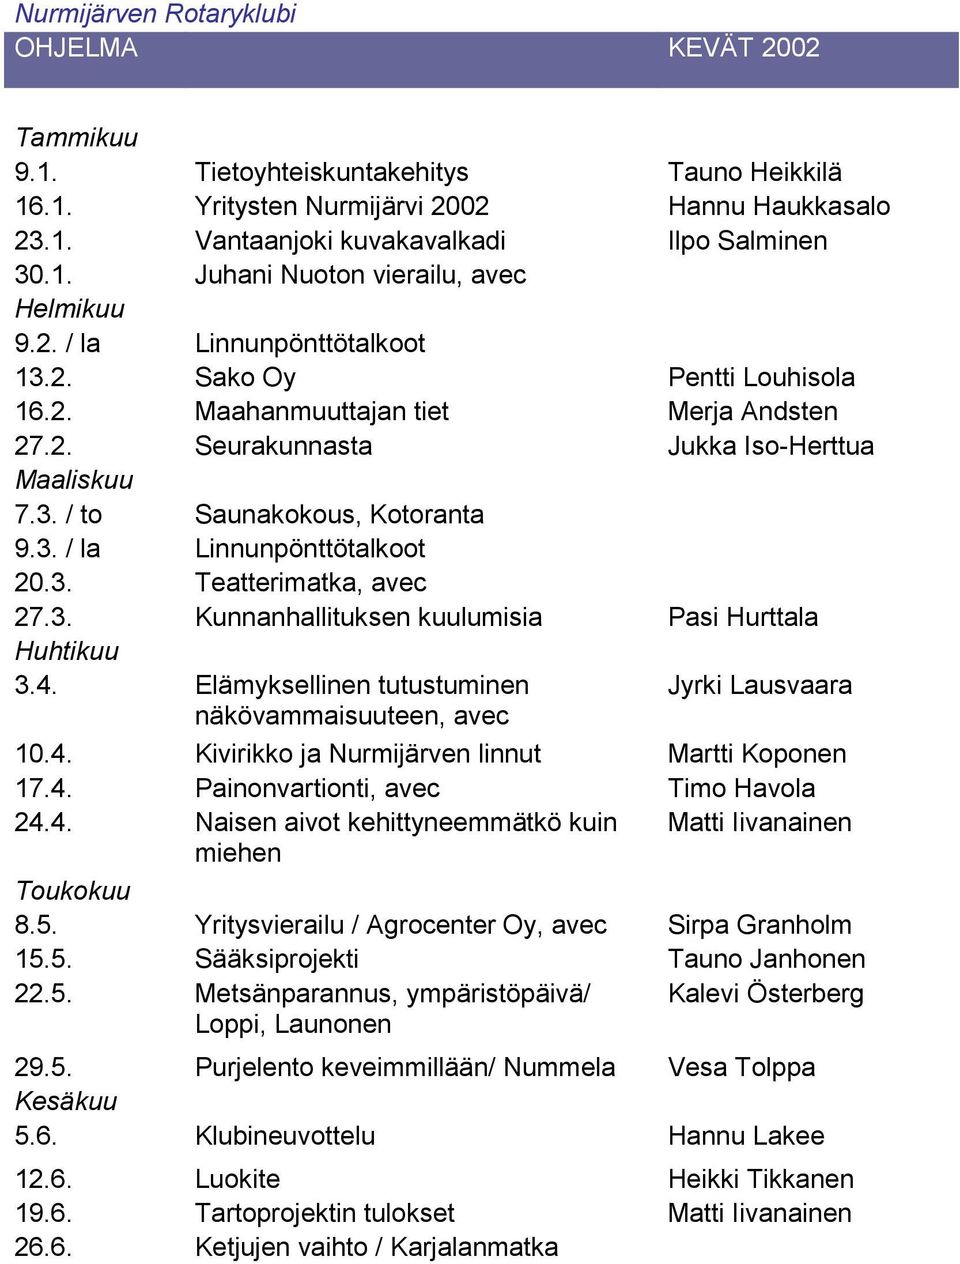 3. Teatterimatka, avec 27.3. Kunnanhallituksen kuulumisia Pasi Hurttala Huhtikuu 3.4. Elämyksellinen tutustuminen Jyrki Lausvaara näkövammaisuuteen, avec 10.4. Kivirikko ja Nurmijärven linnut Martti Koponen 17.